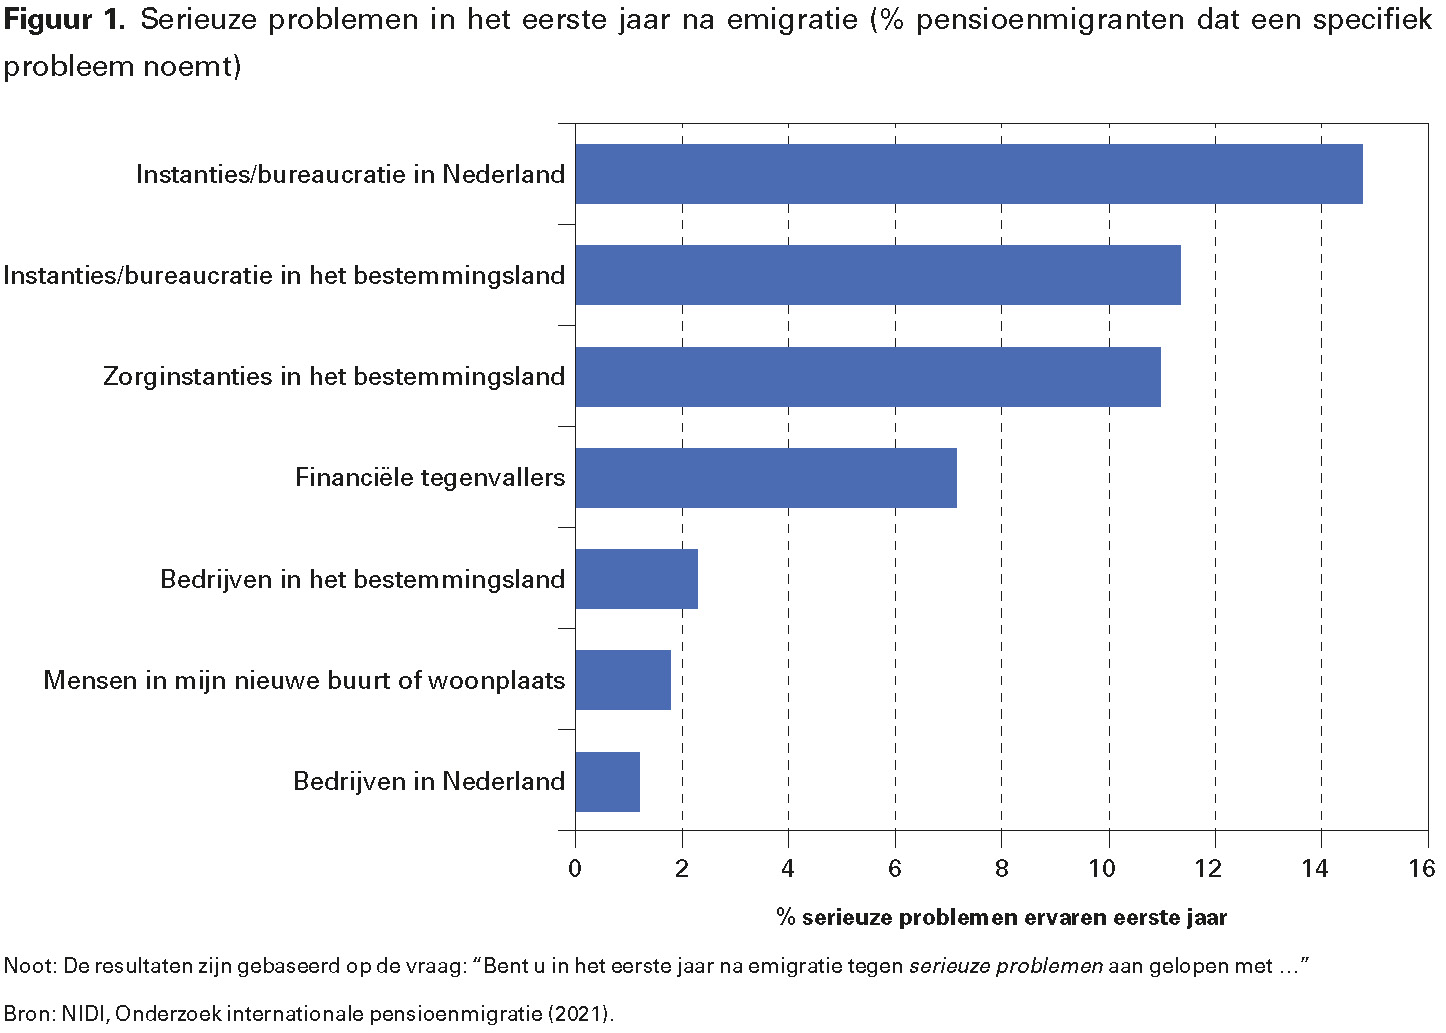 Figuur 1. Serieuze problemen in het eerste jaar na emigratie (% pensioenmigranten dat een specifiek probleem noemt)